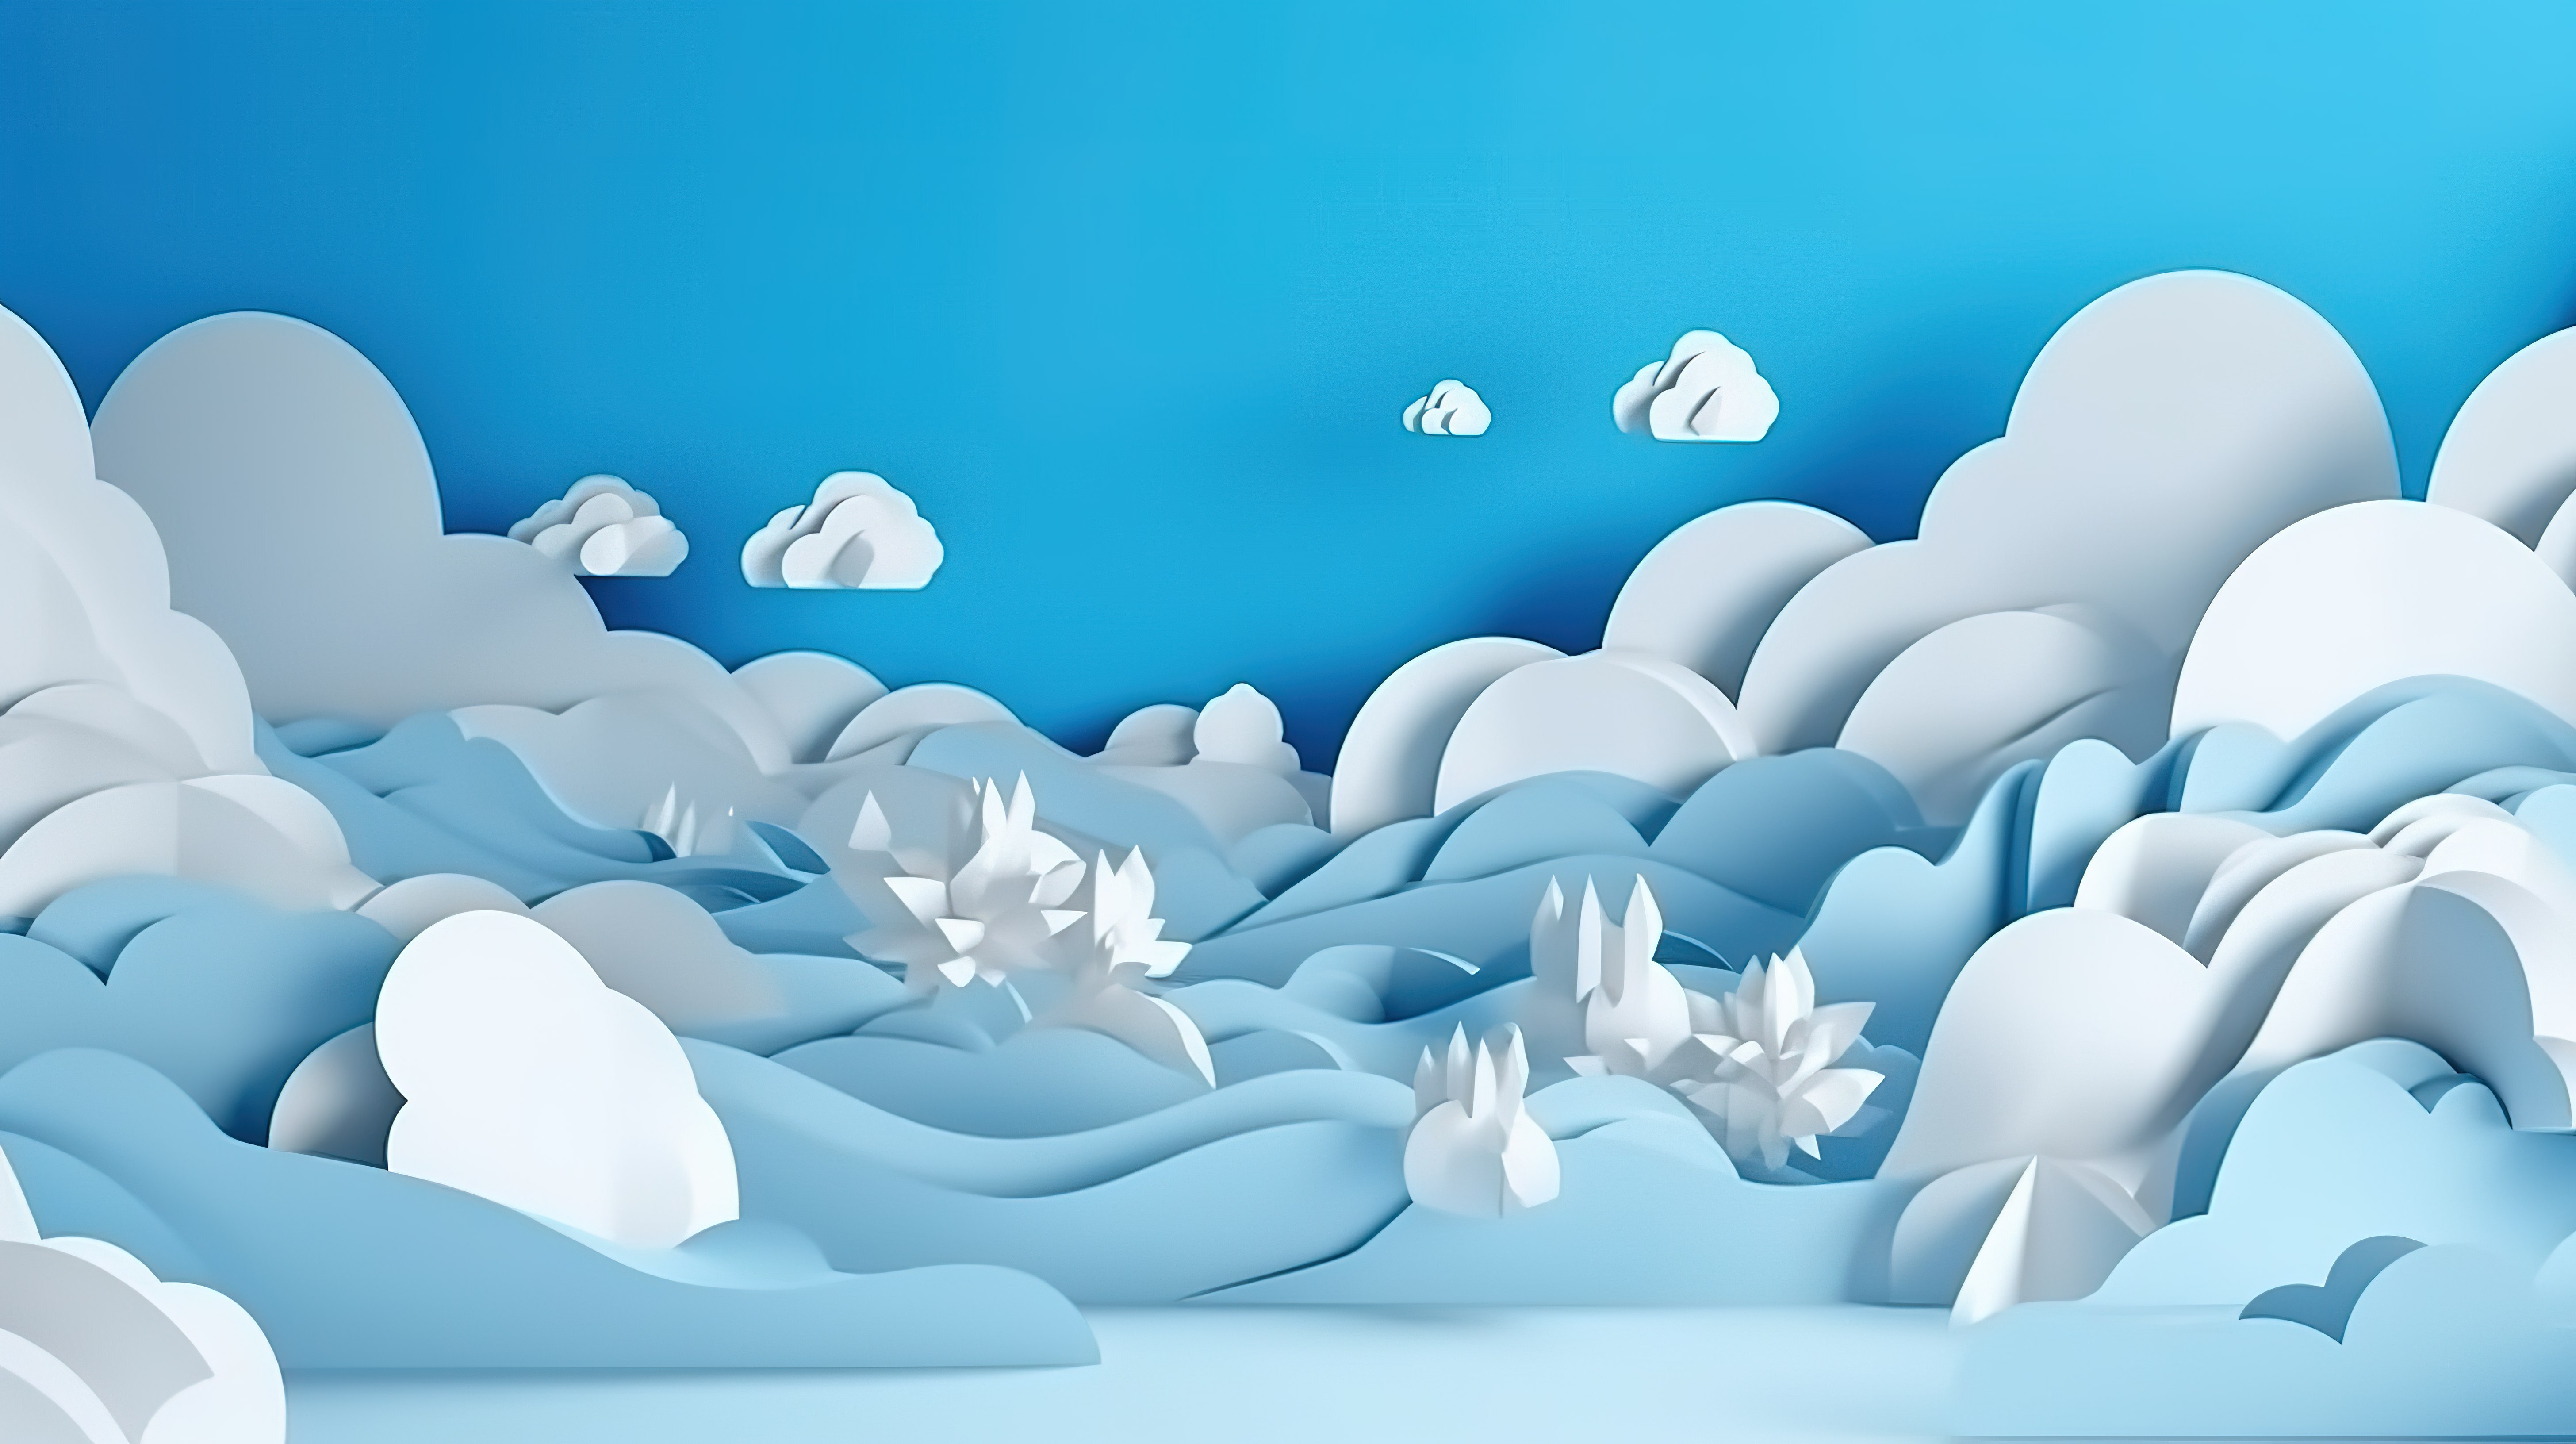 剪纸风格明亮的蓝天与云彩的 3d 插图图片